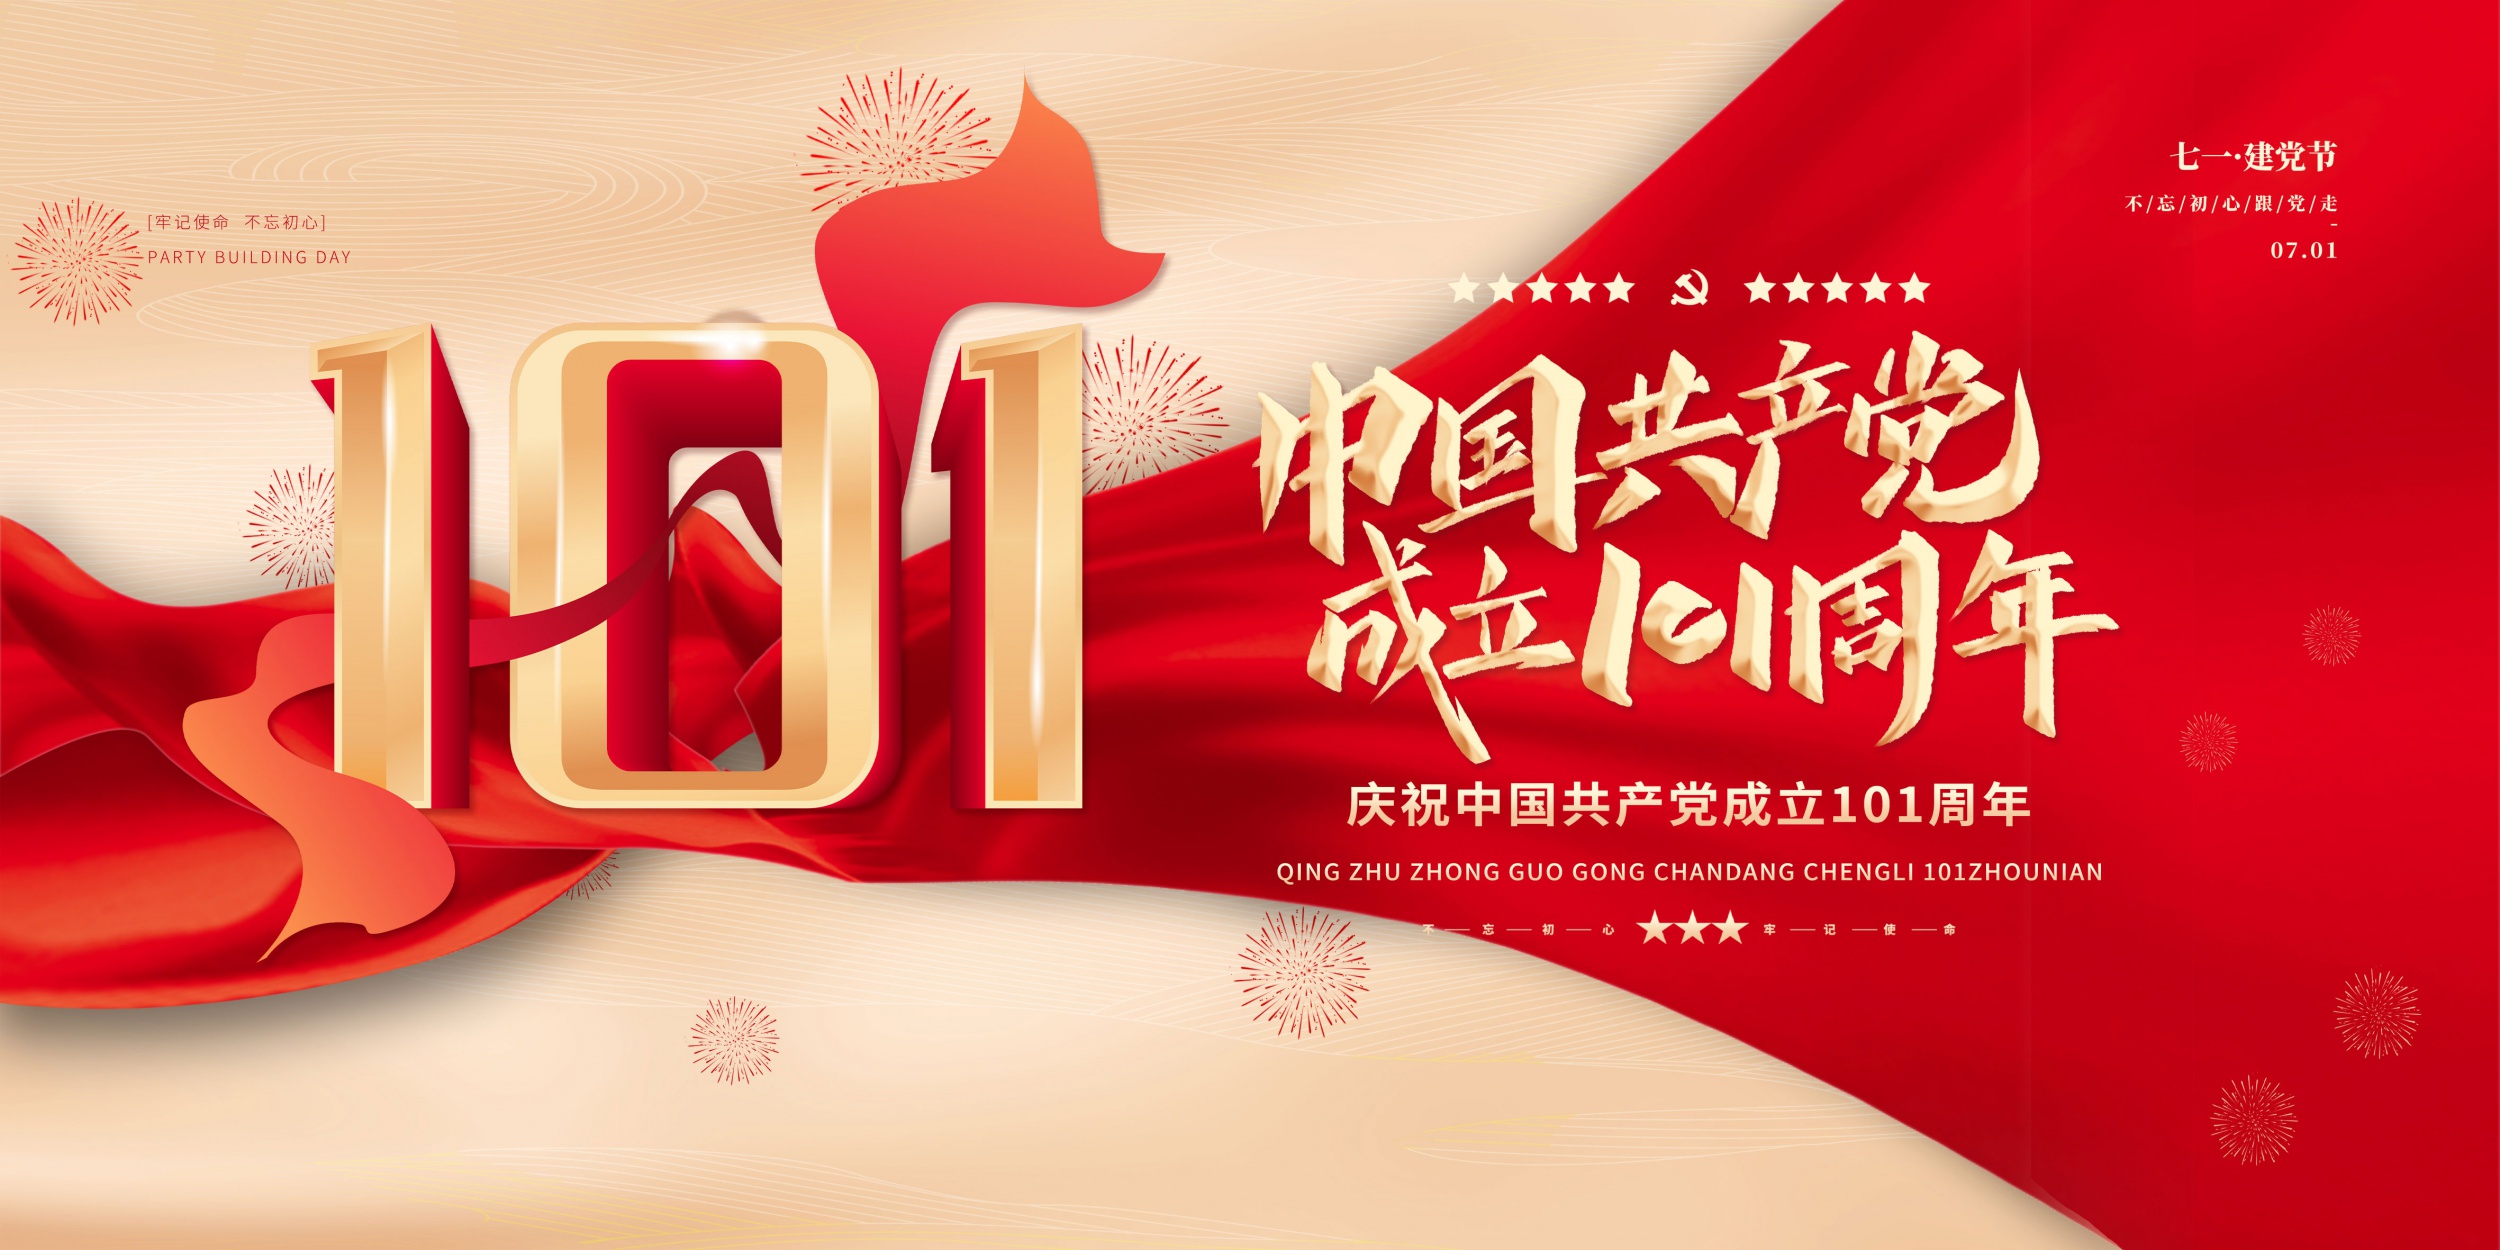 熱烈祝賀中國共產黨成立101周年!